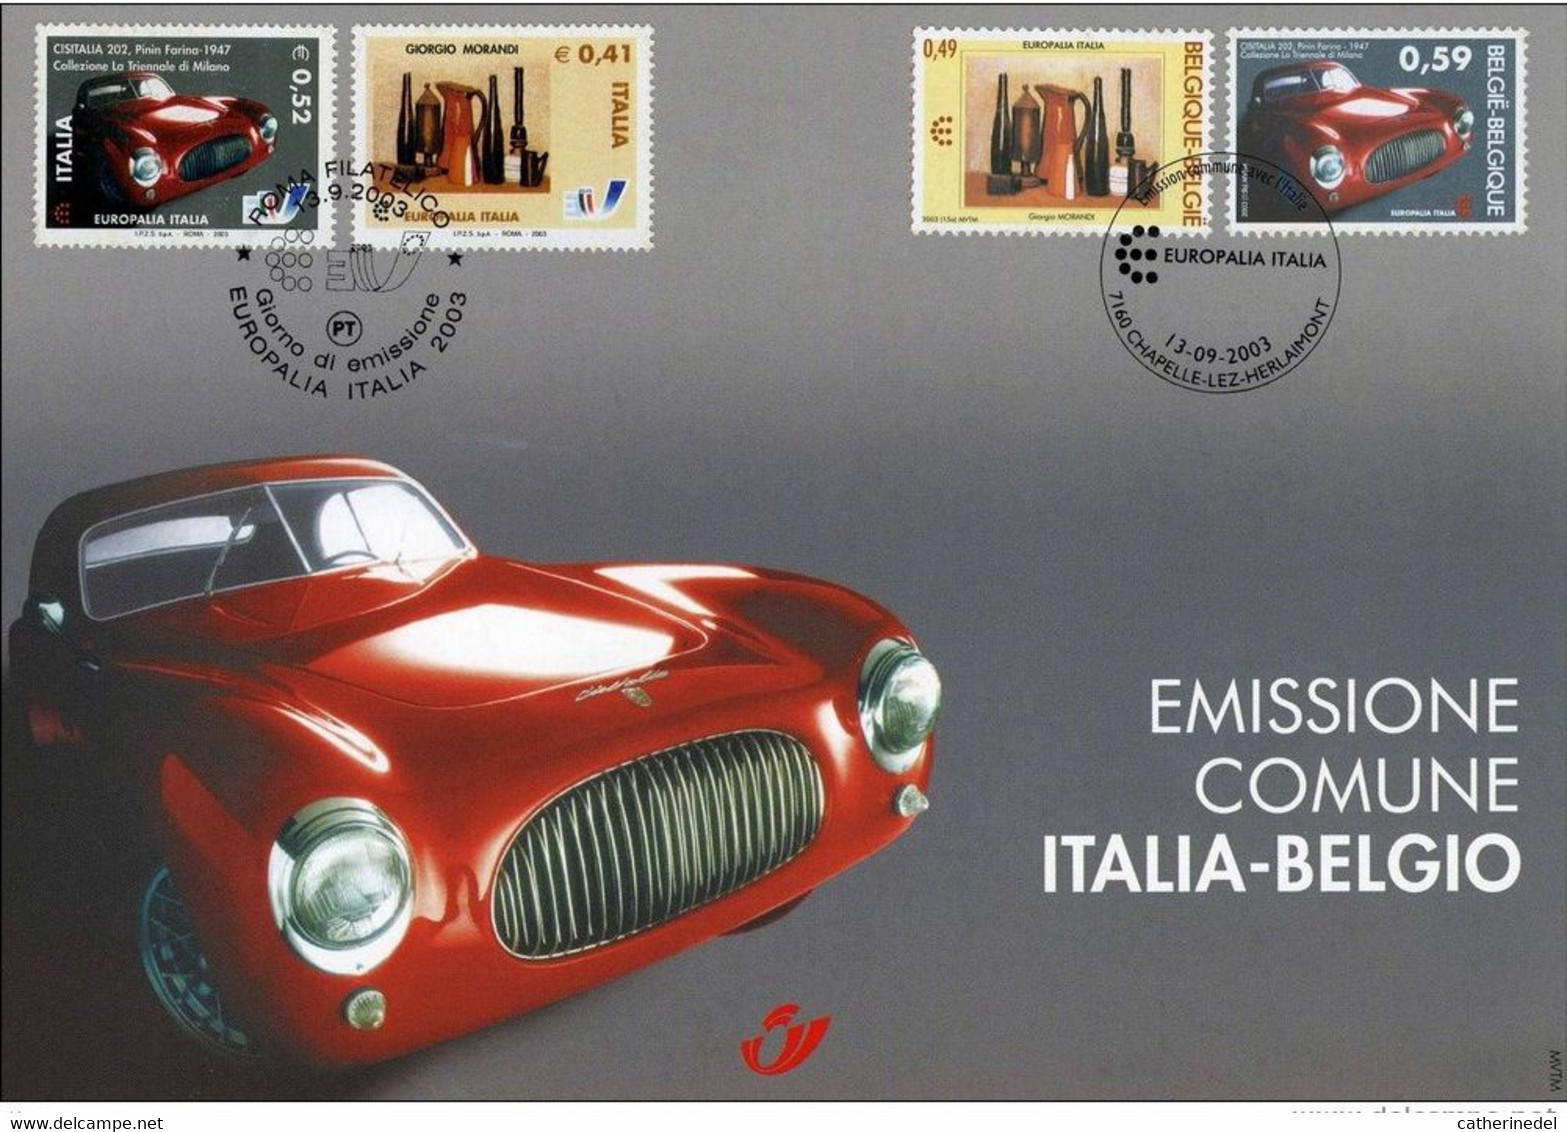 Année 2003 : Carte Souvenir 3205HK - Europalia Italie - Cartes Souvenir – Emissions Communes [HK]